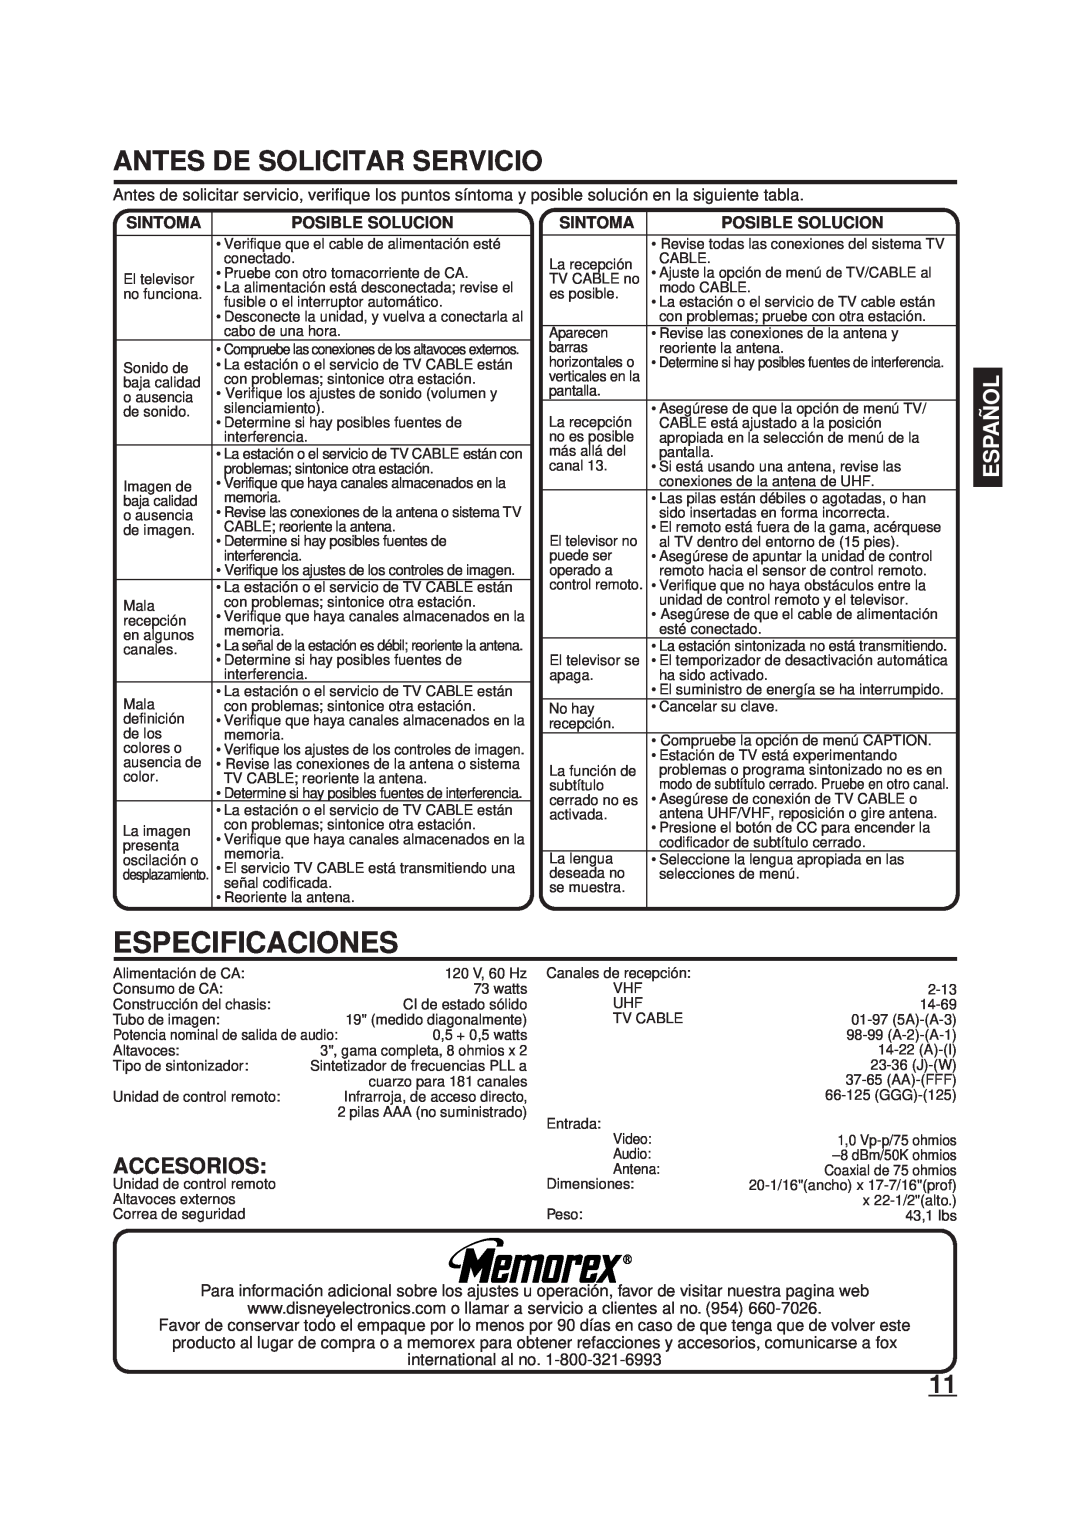 Memorex DT1900-C manual Especificaciones, Antes De Solicitar Servicio, Accesorios, Sintoma, Posible Solucion, Españ Ol 